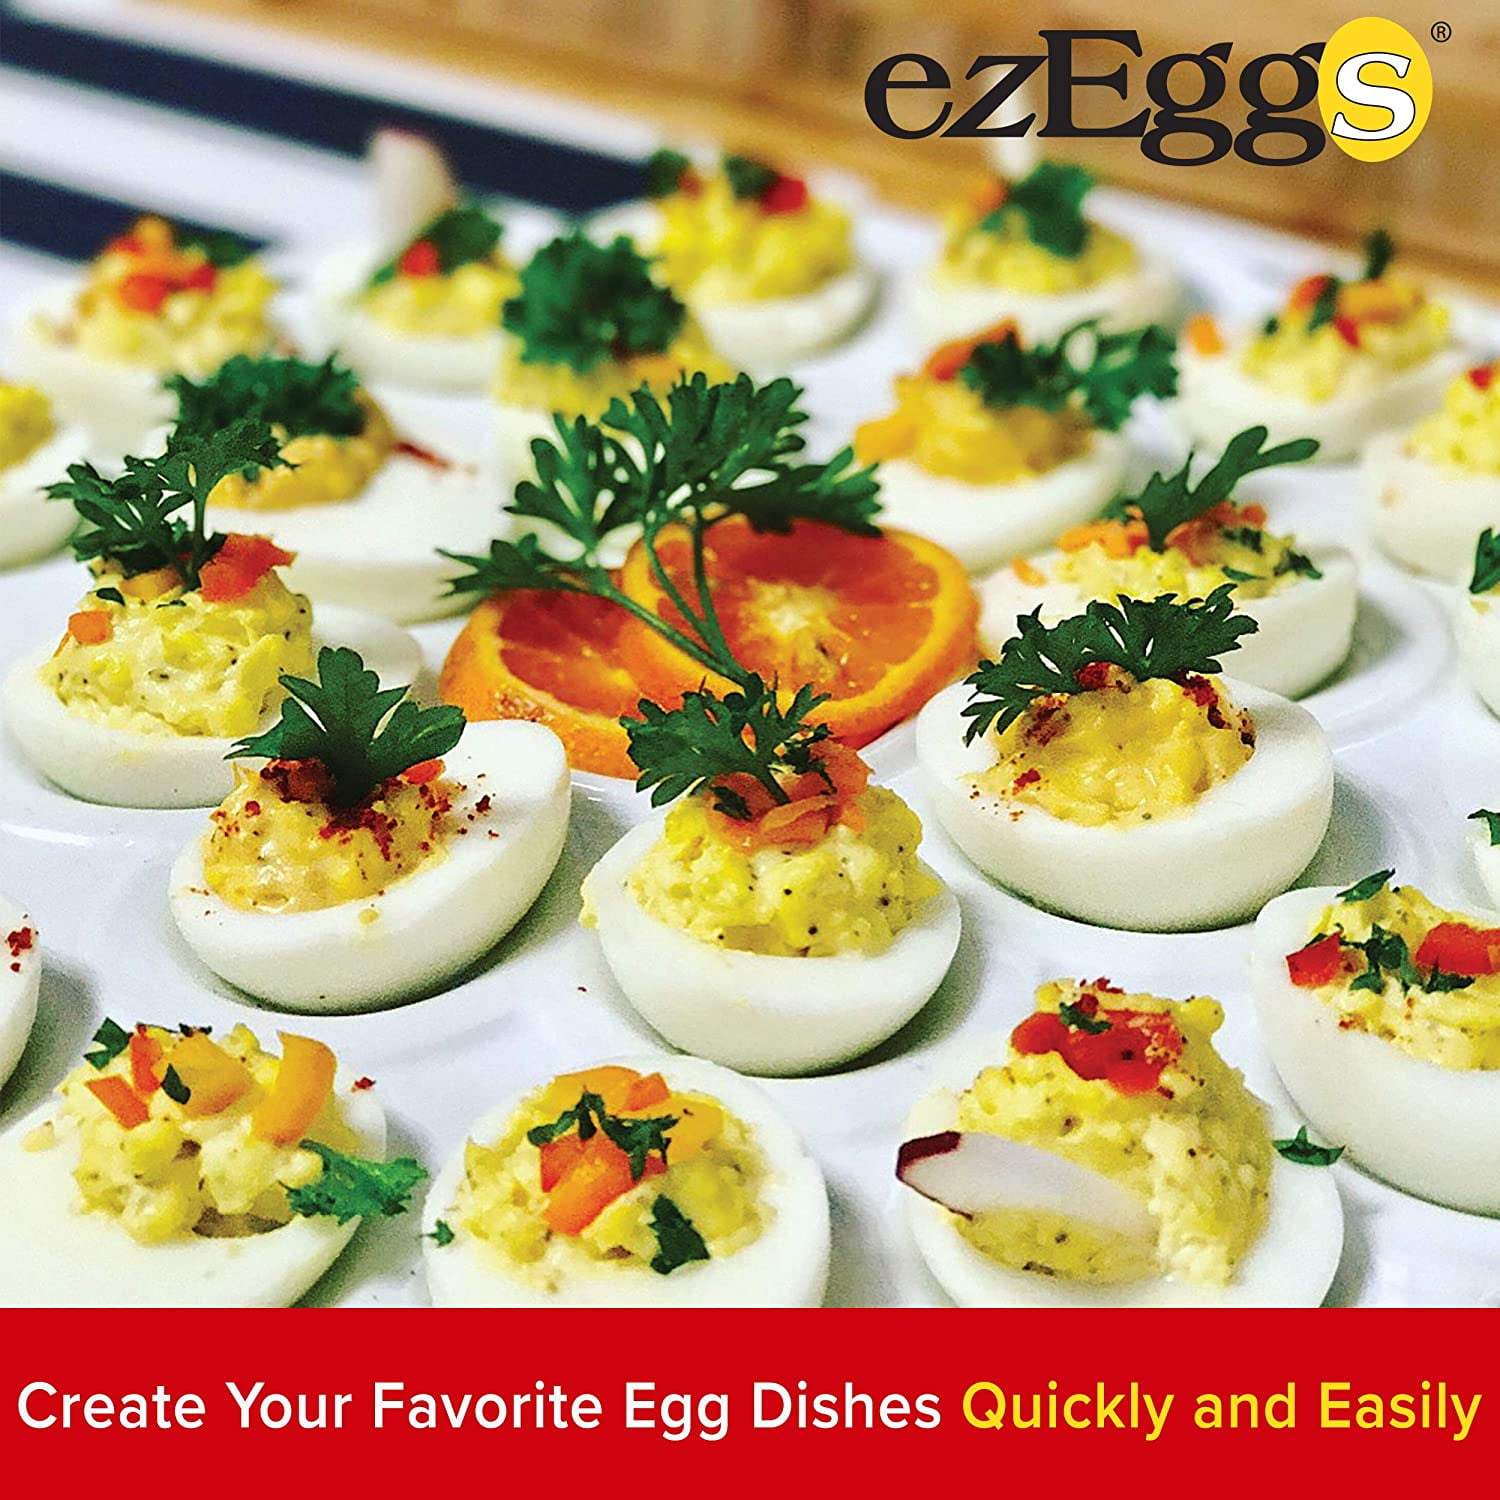  EZ EGGS Hard Boiled Egg Peeler, 3 Egg Capacity